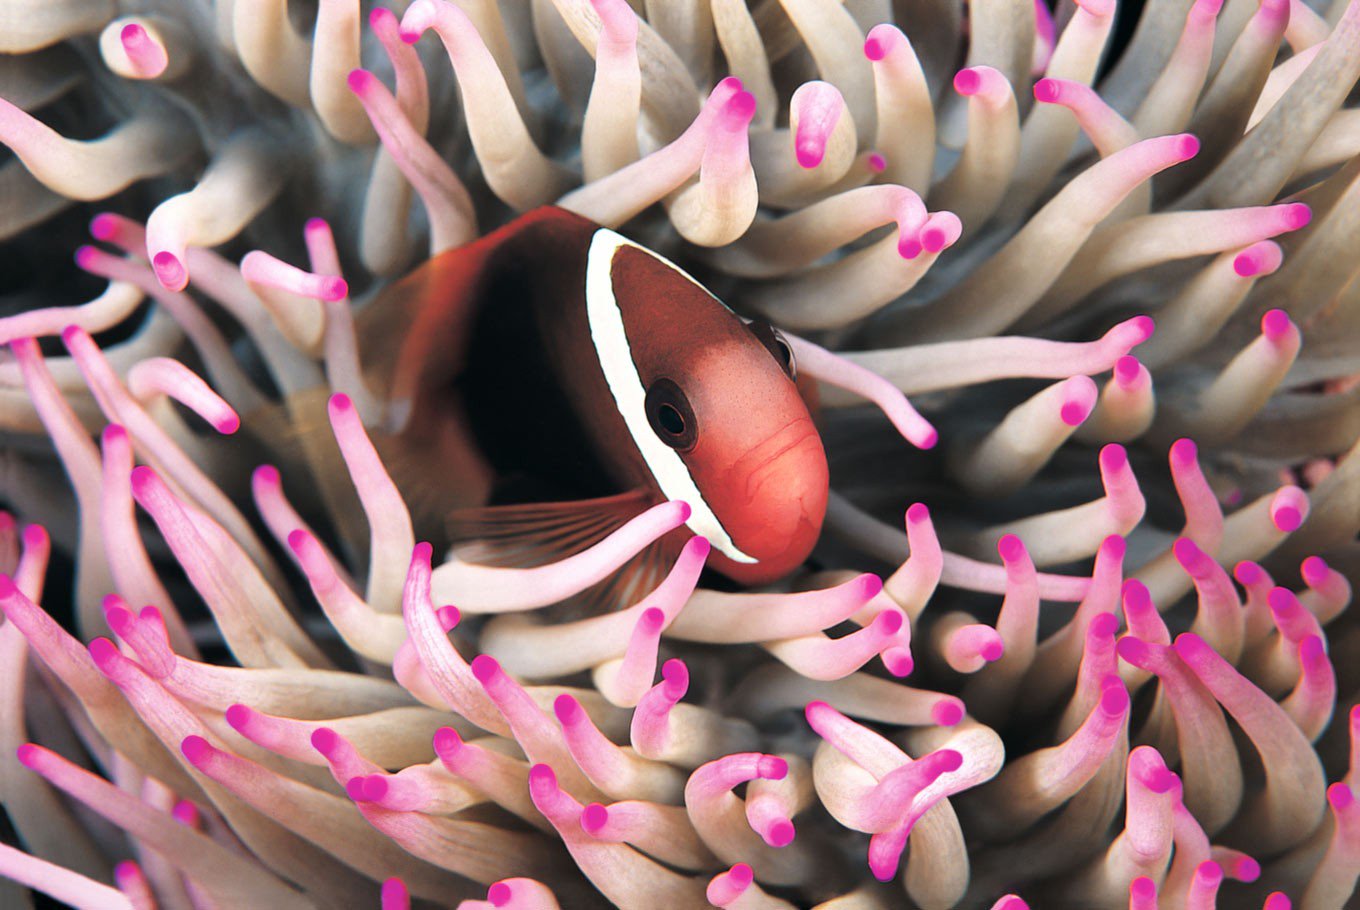 Fire clownfish hiding in anemones at Wakatobi. (Shutterstock/File)